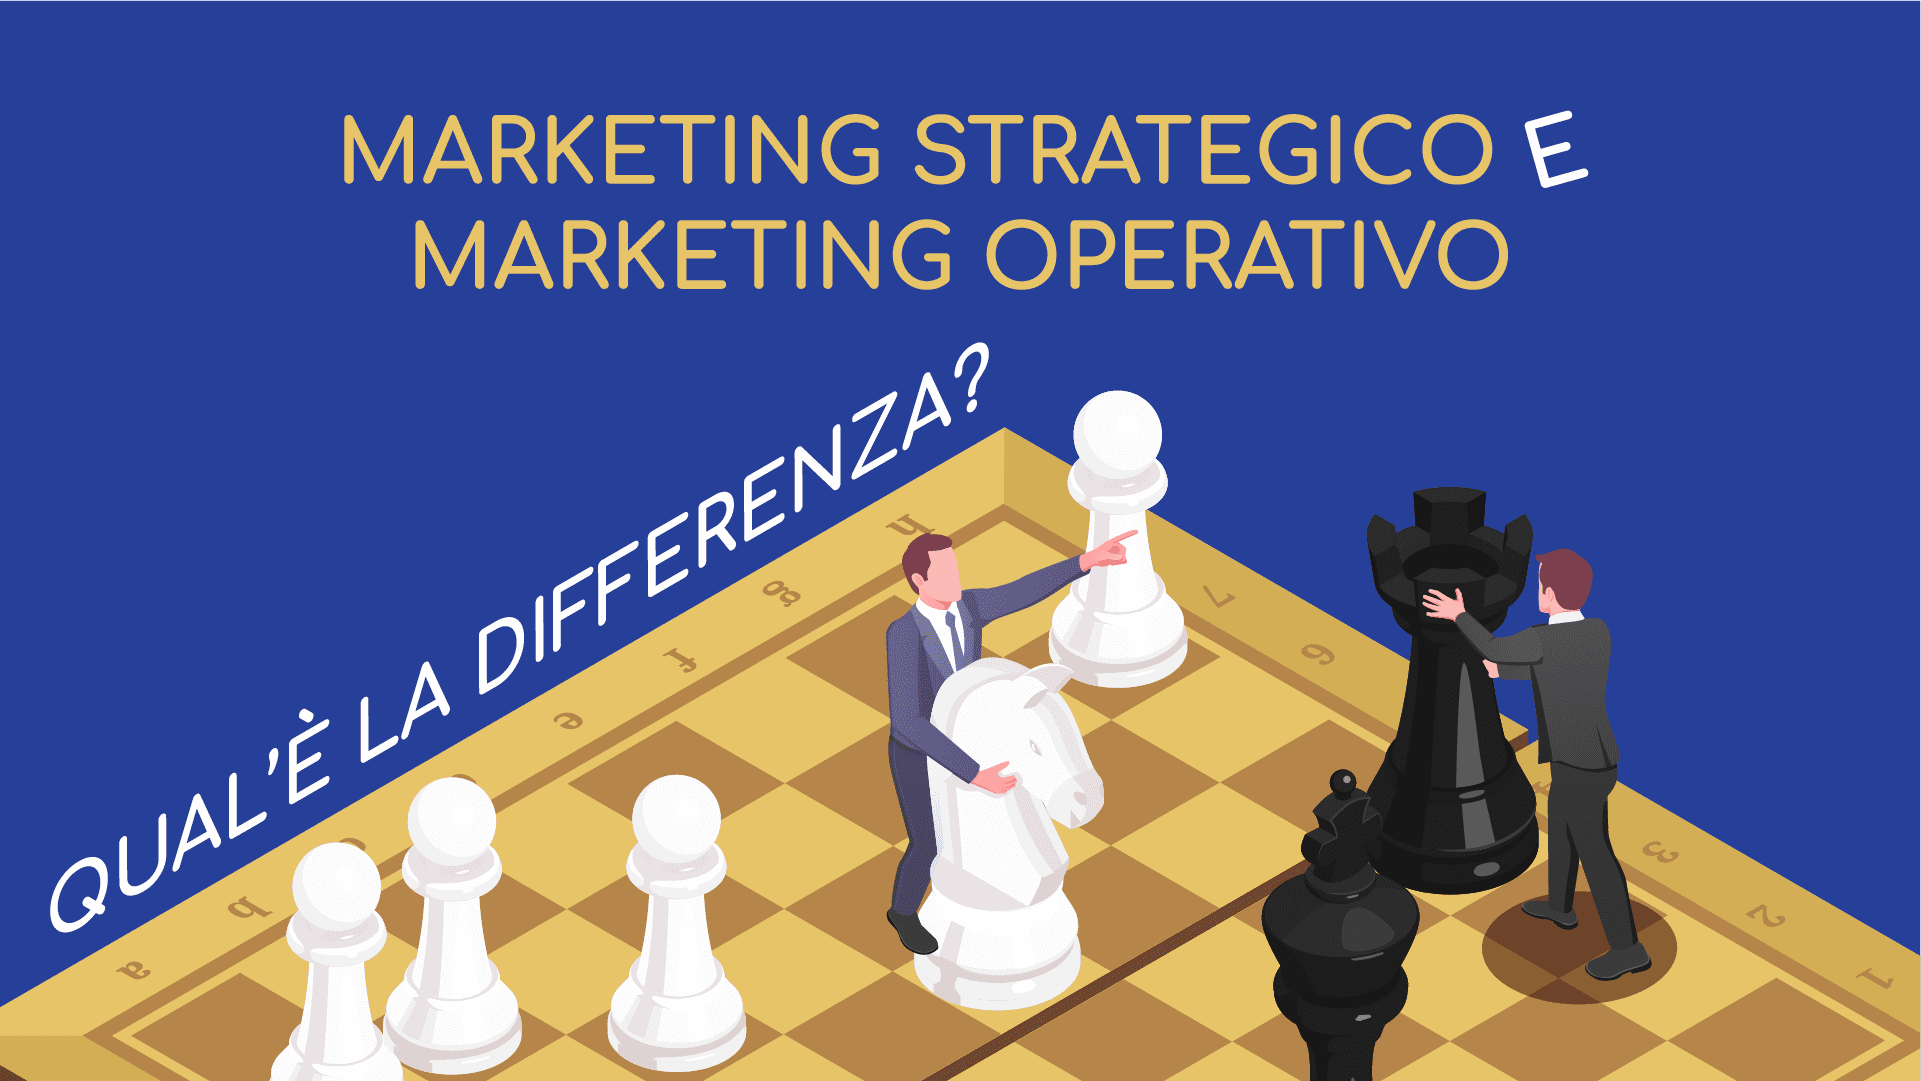 Marketing Strategico e Operativo